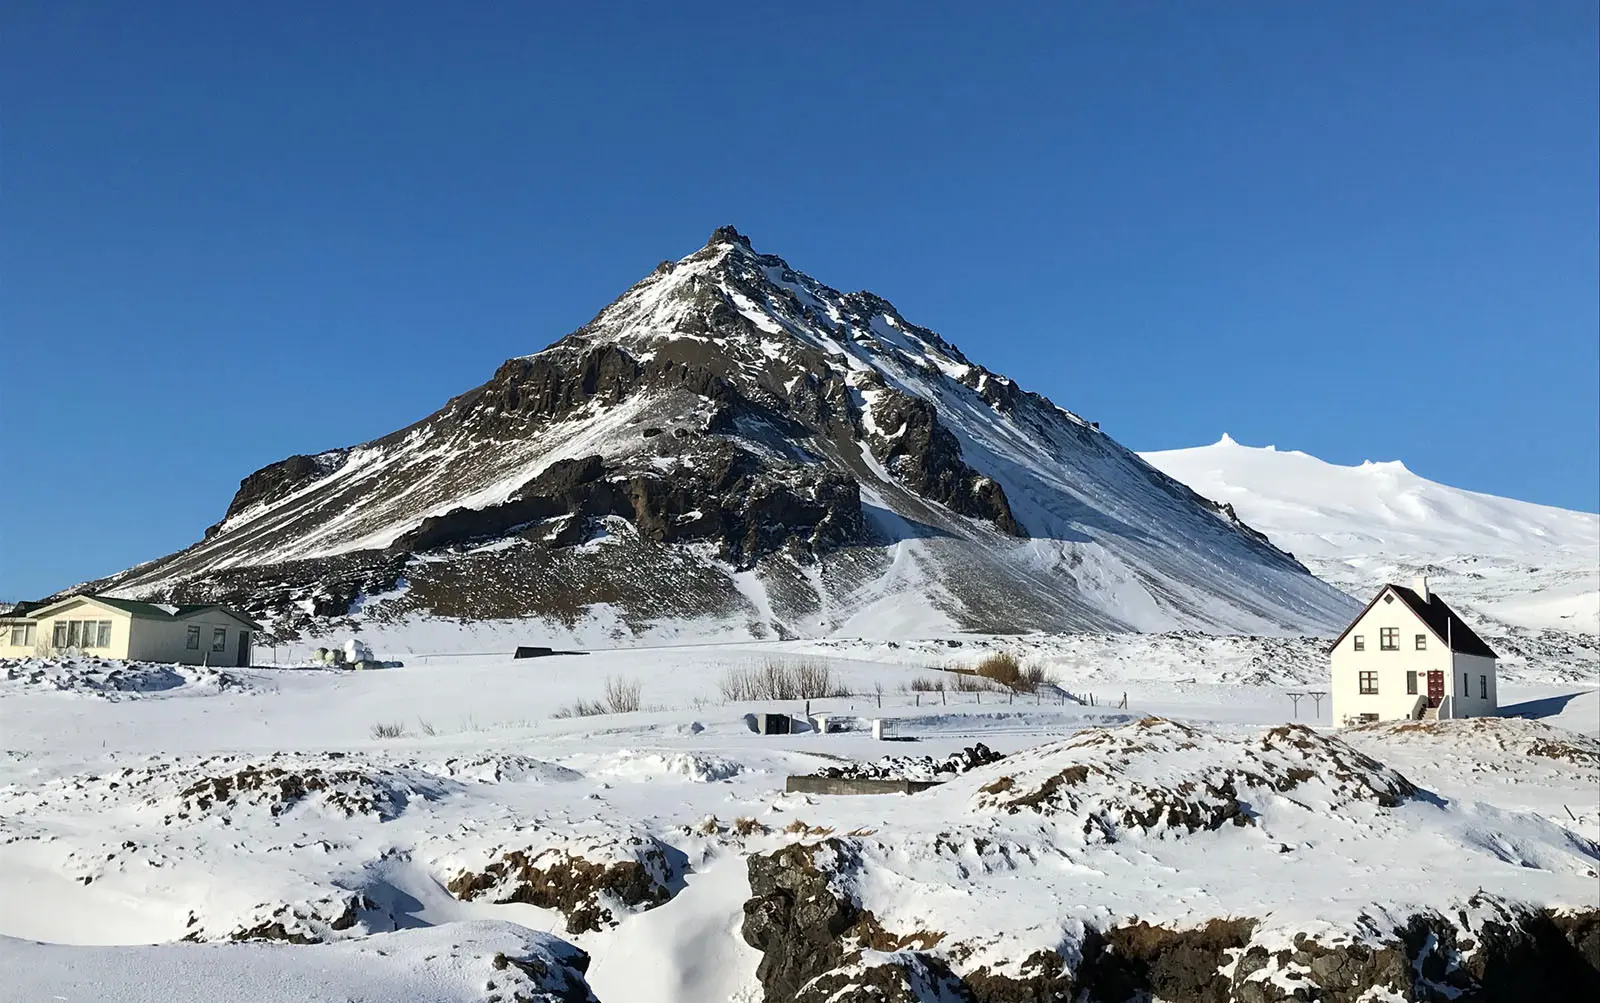 Lanskap di Snaefellsnes, Islandia, pada musim dingin Maret 2018. (Bola.com/Aning Jati)